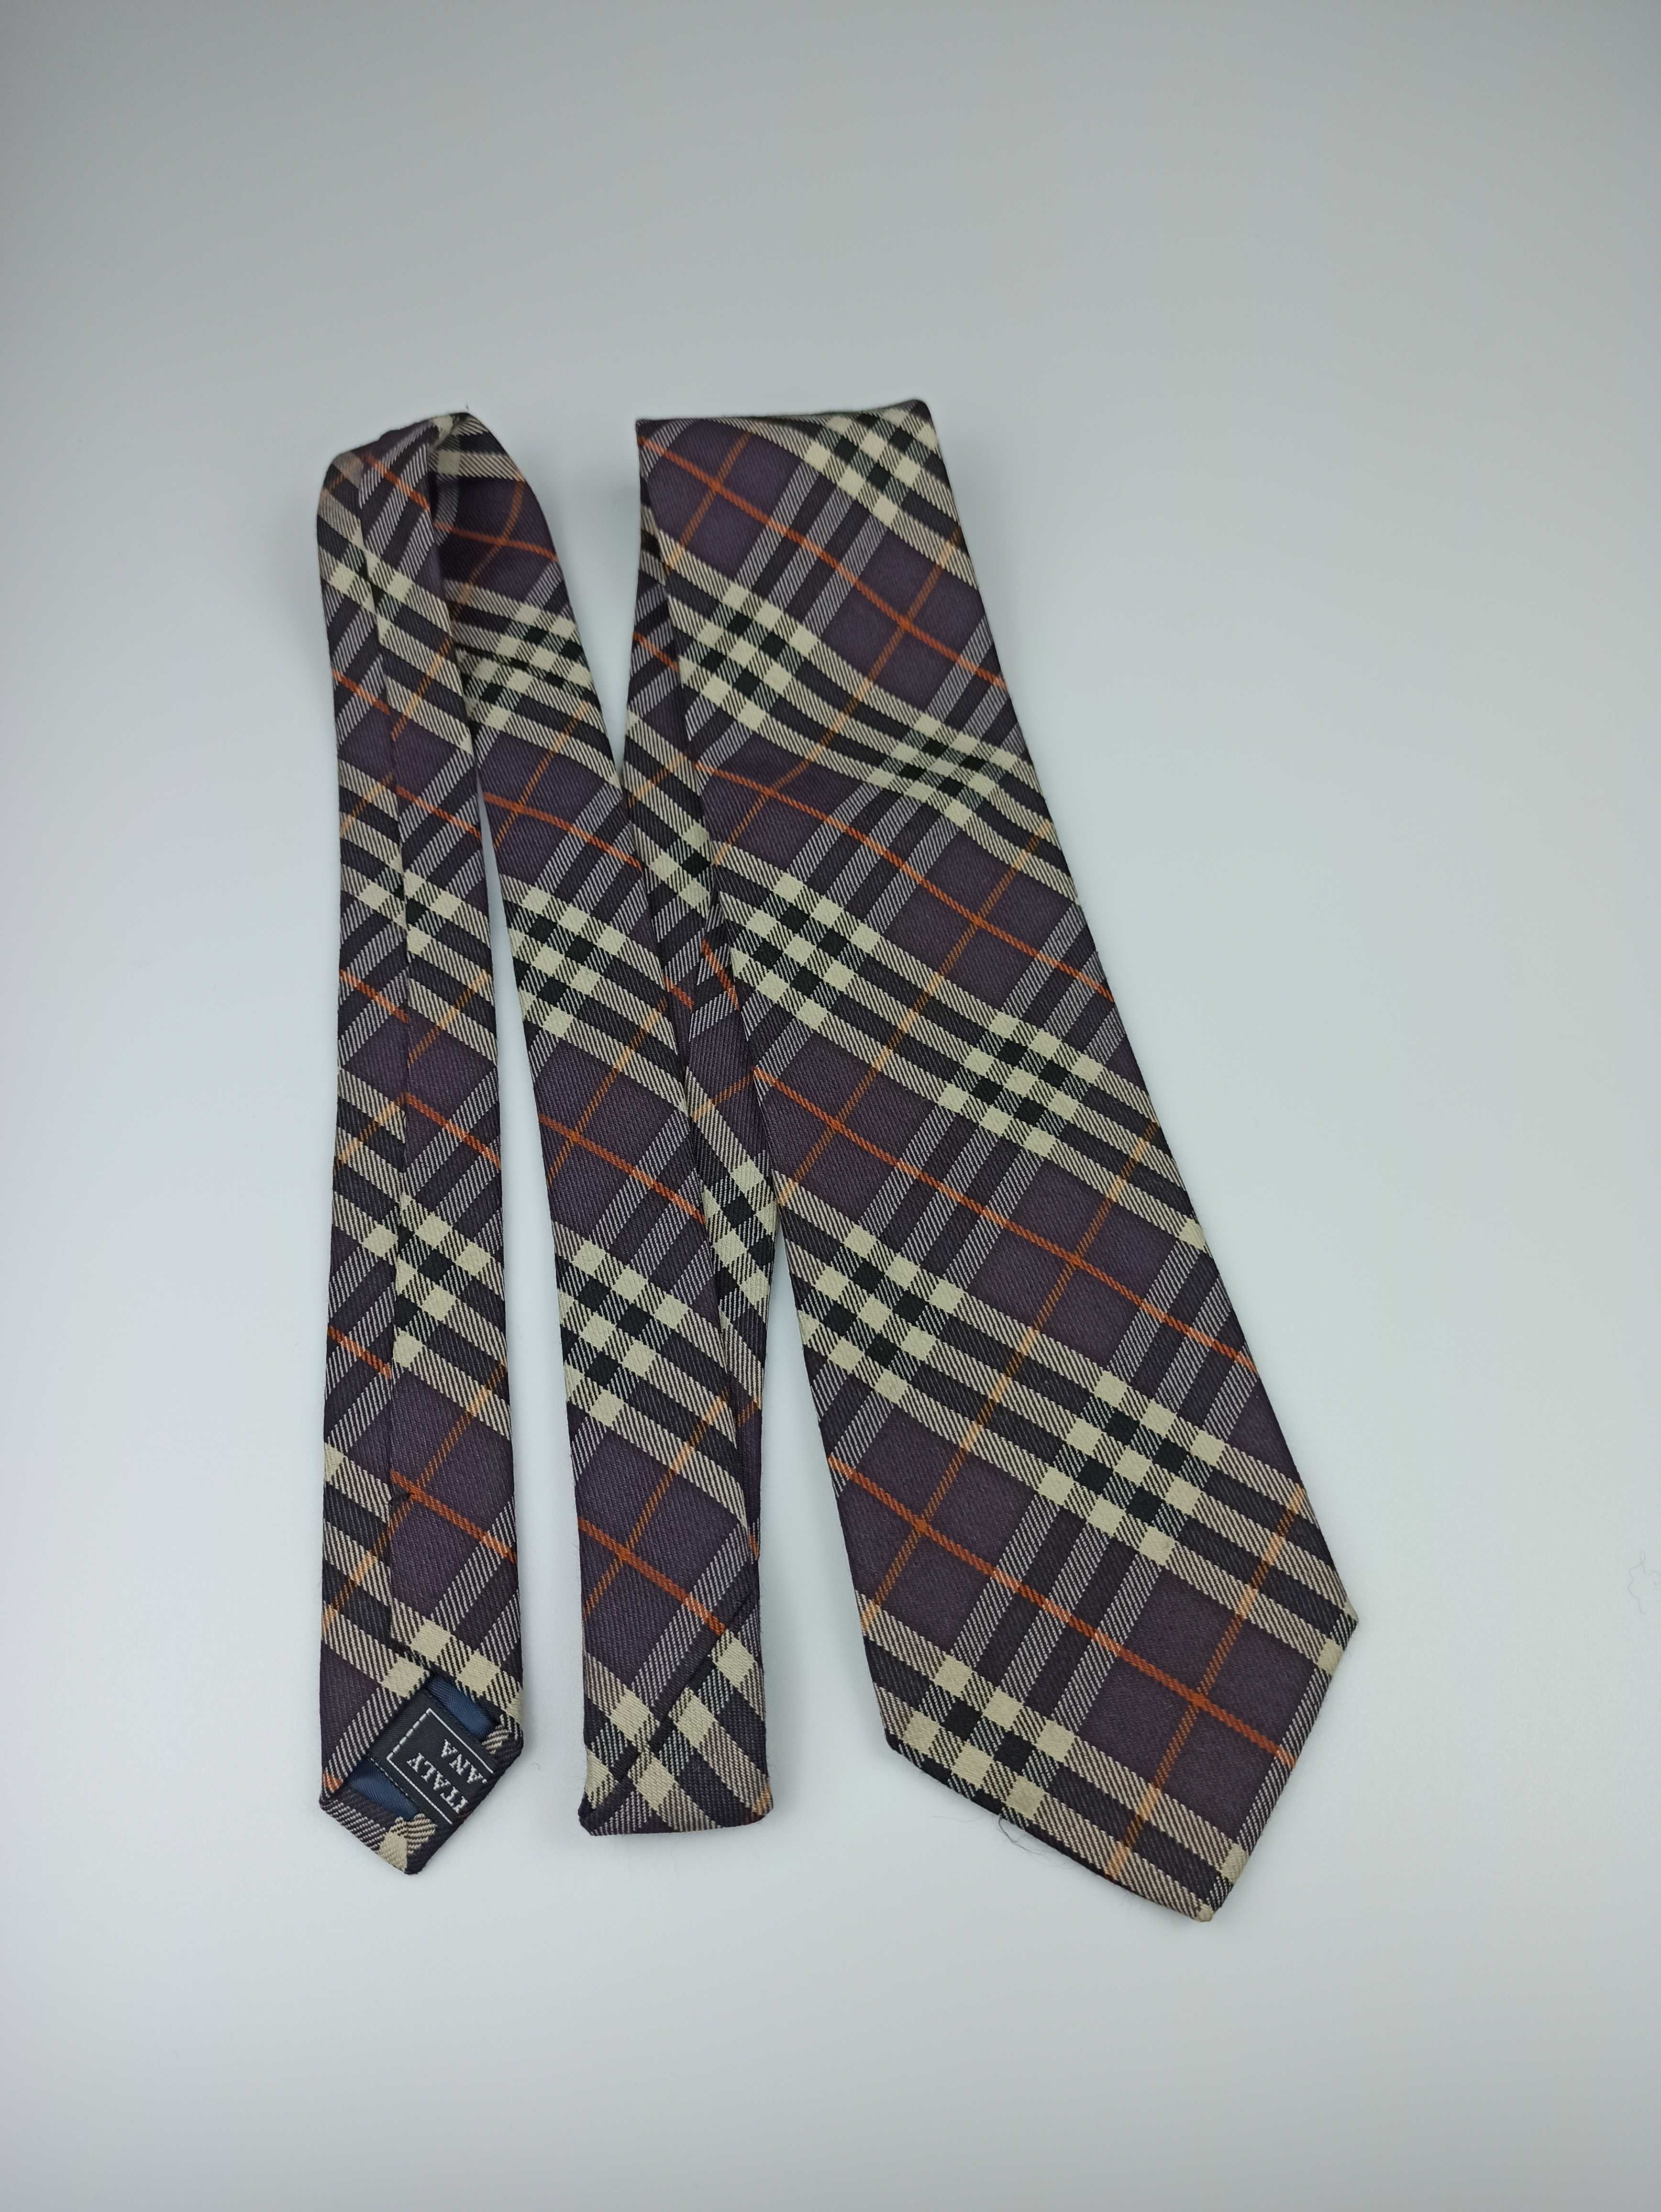 GINALEBOLE fioletowy wełniany krawat w kratkę włoski